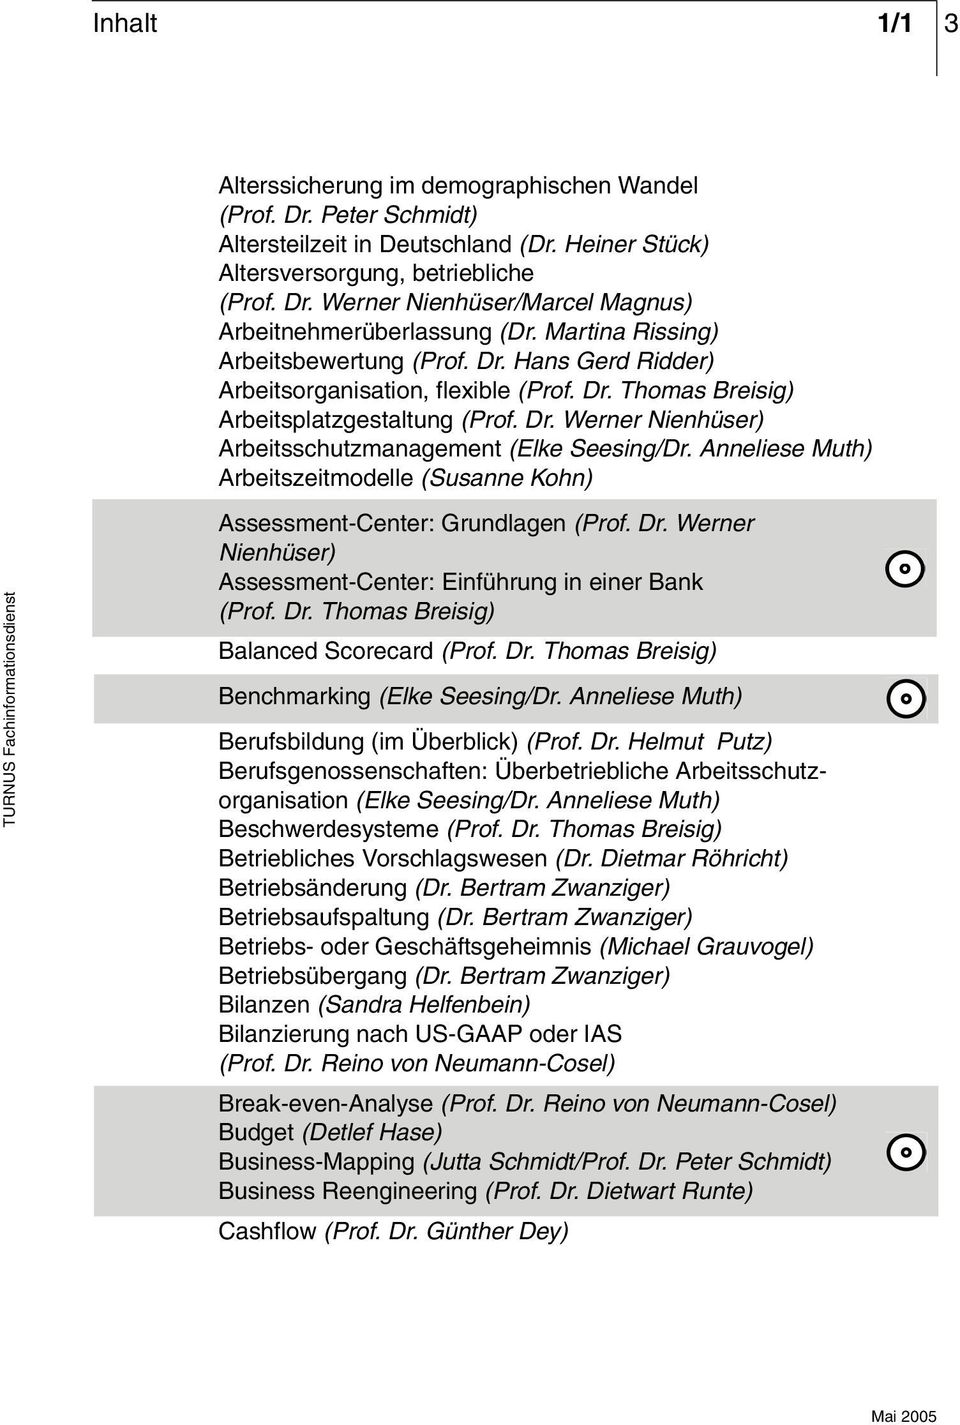 Anneliese Muth) Arbeitszeitmodelle (Susanne Kohn) Assessment-Center: Grundlagen (Prof. Dr. Werner Nienhüser) Assessment-Center: Einführung in einer Bank (Prof. Dr. Thomas Breisig) Balanced Scorecard (Prof.